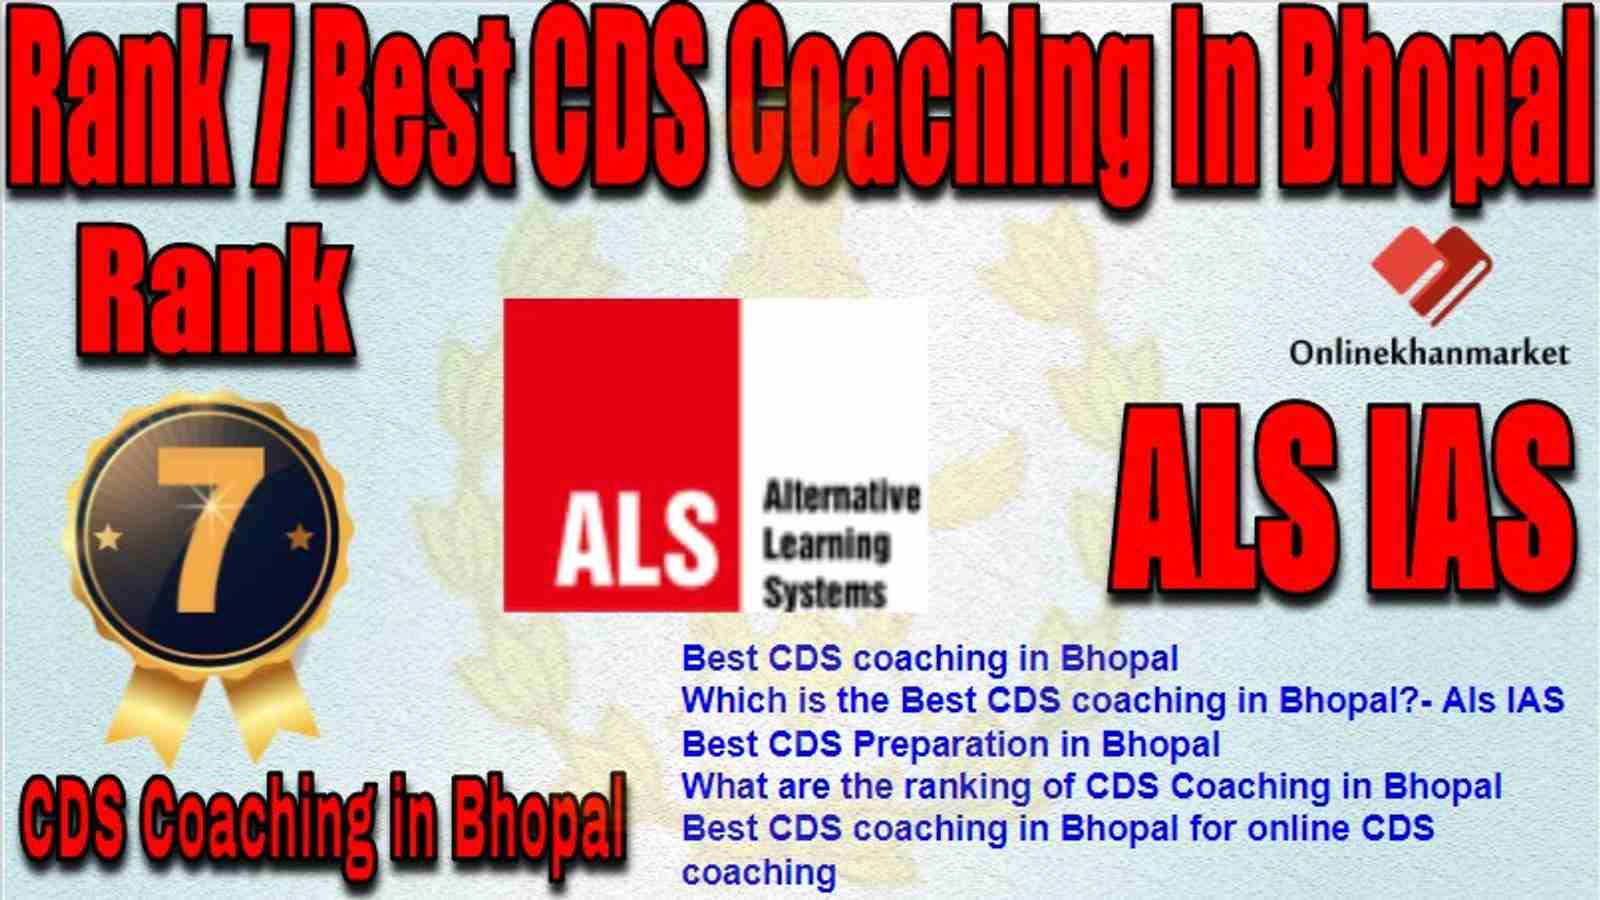 Rank 7 Best CDS Coaching in bhopal